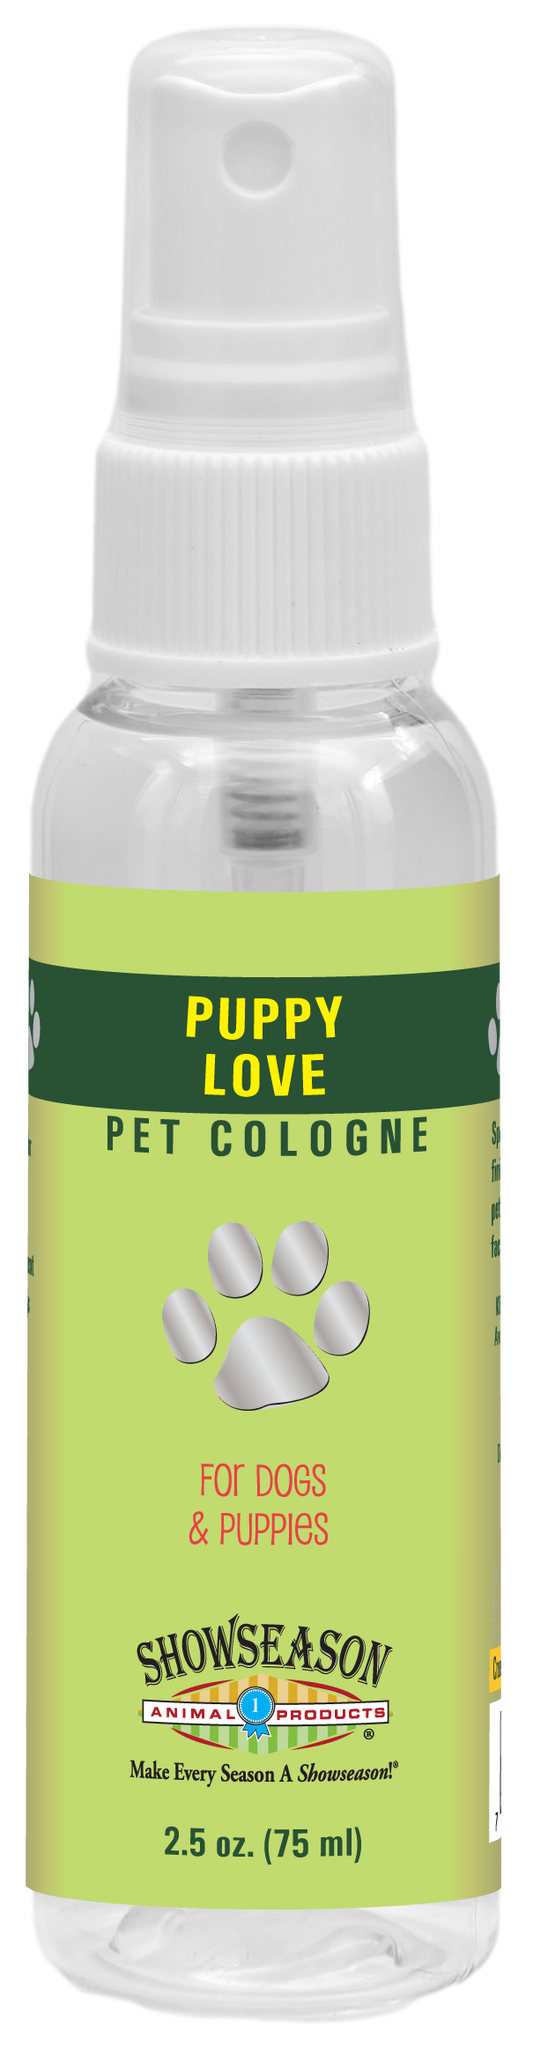 Puppy Love Pet Cologne | Showseason®